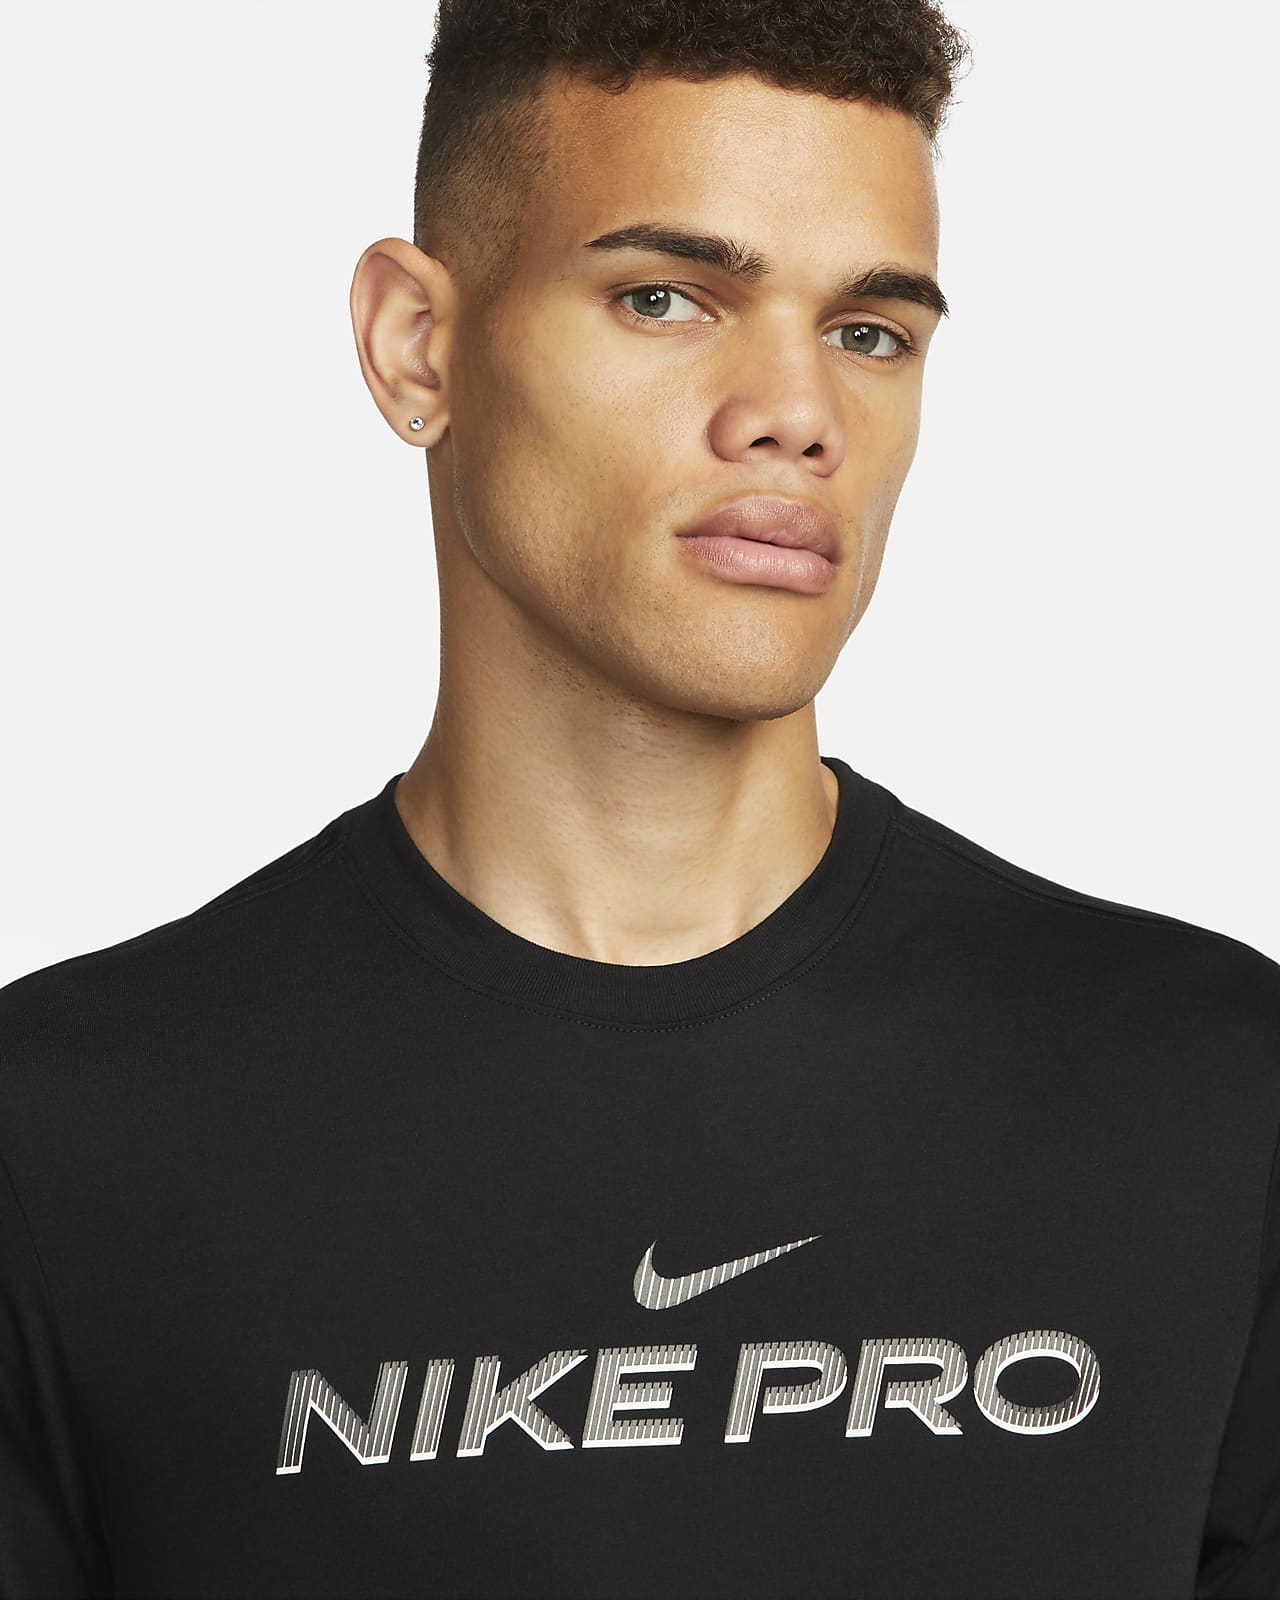 Nike Dri-FIT Men's Fitness T-Shirt. Nike SI